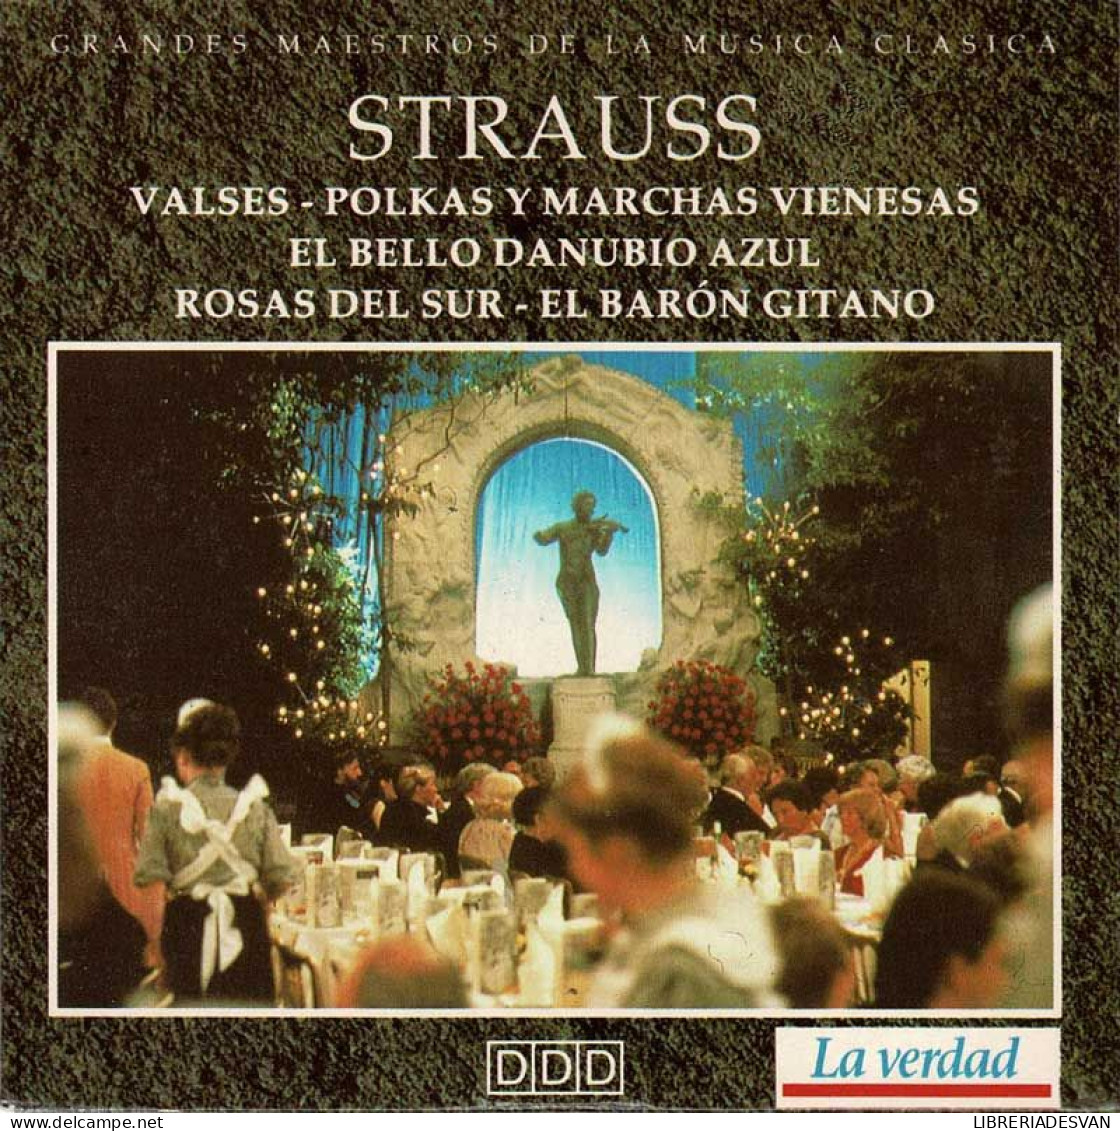 Strauss - Valses. Polkas Y Marchas Vienesas. El Bello Danubio Azul. Rosas Del Sur. El Barón Gitano. CD - Classica